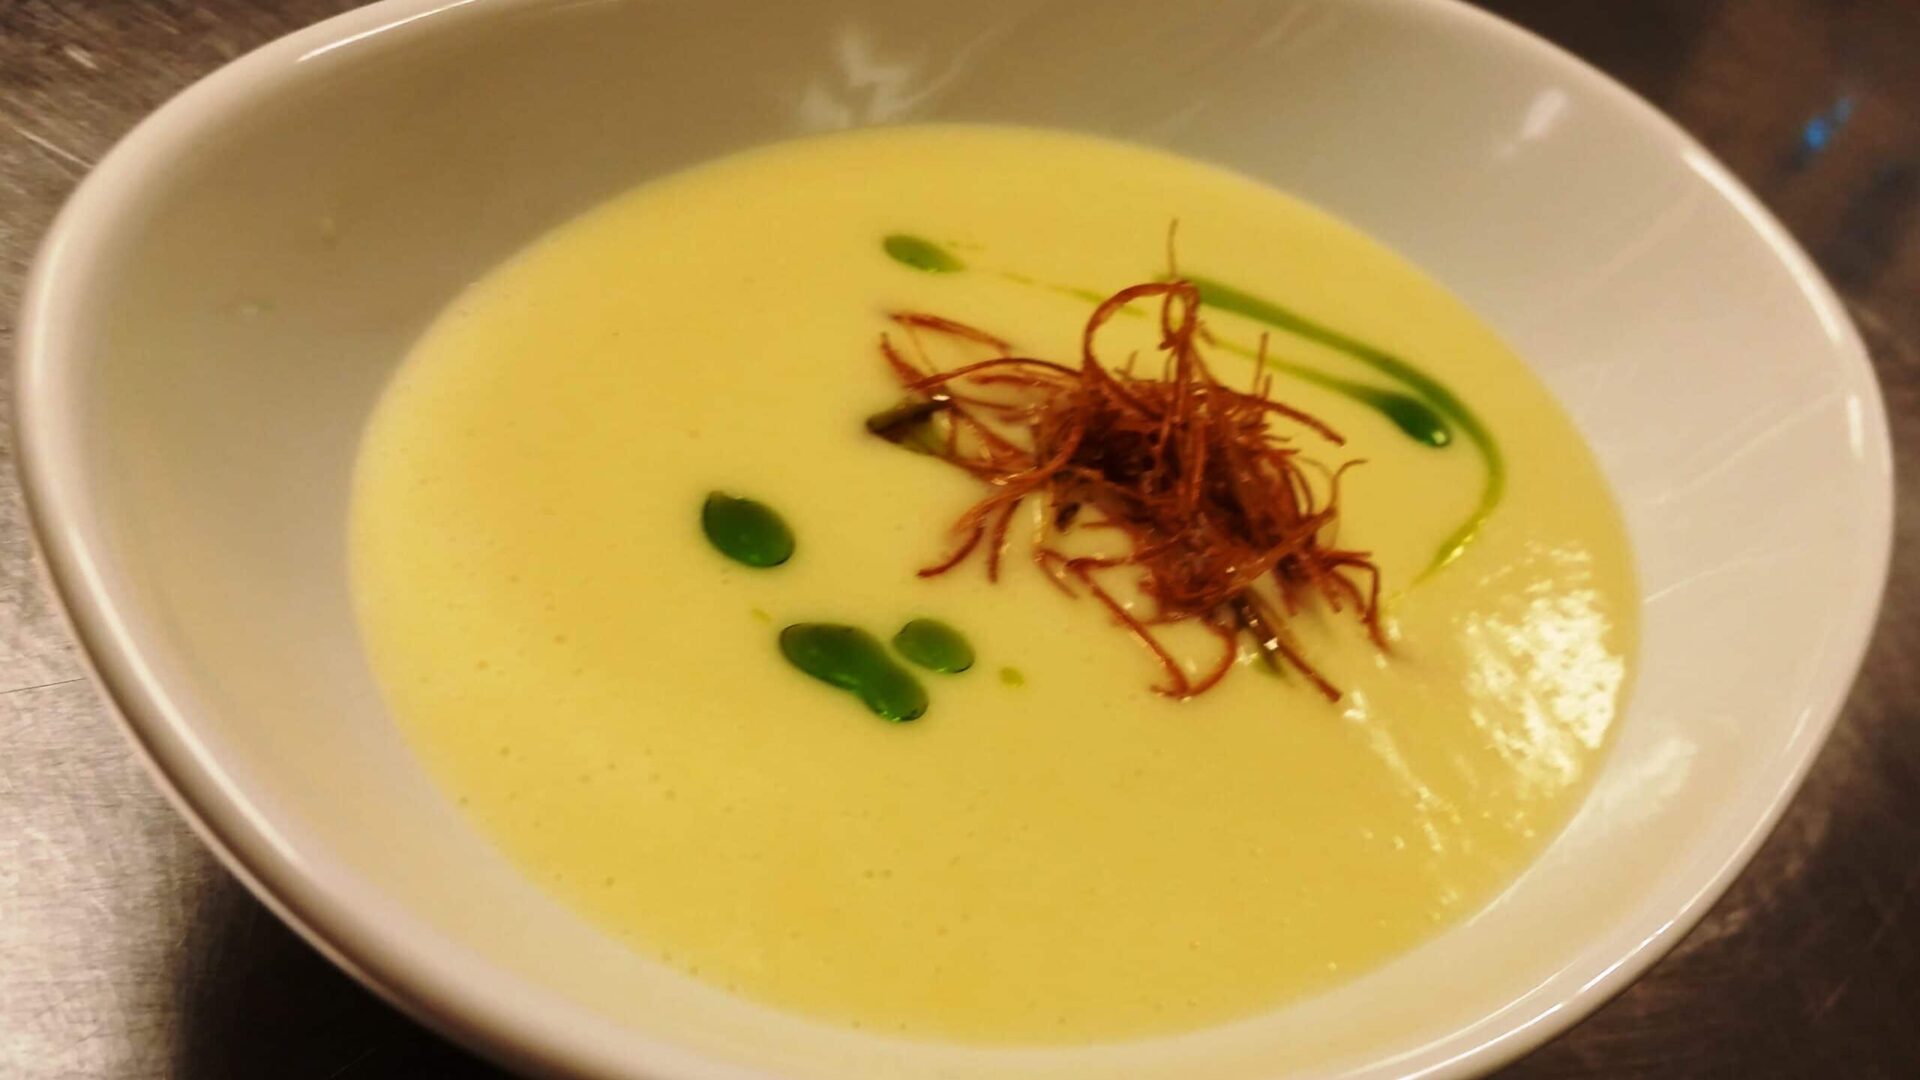 a bowl of potato leek soup recipe|potato leek soup recipe at Rabbit Hill Inn|Potato Leek soup recipe from Rabbit Hill Inn